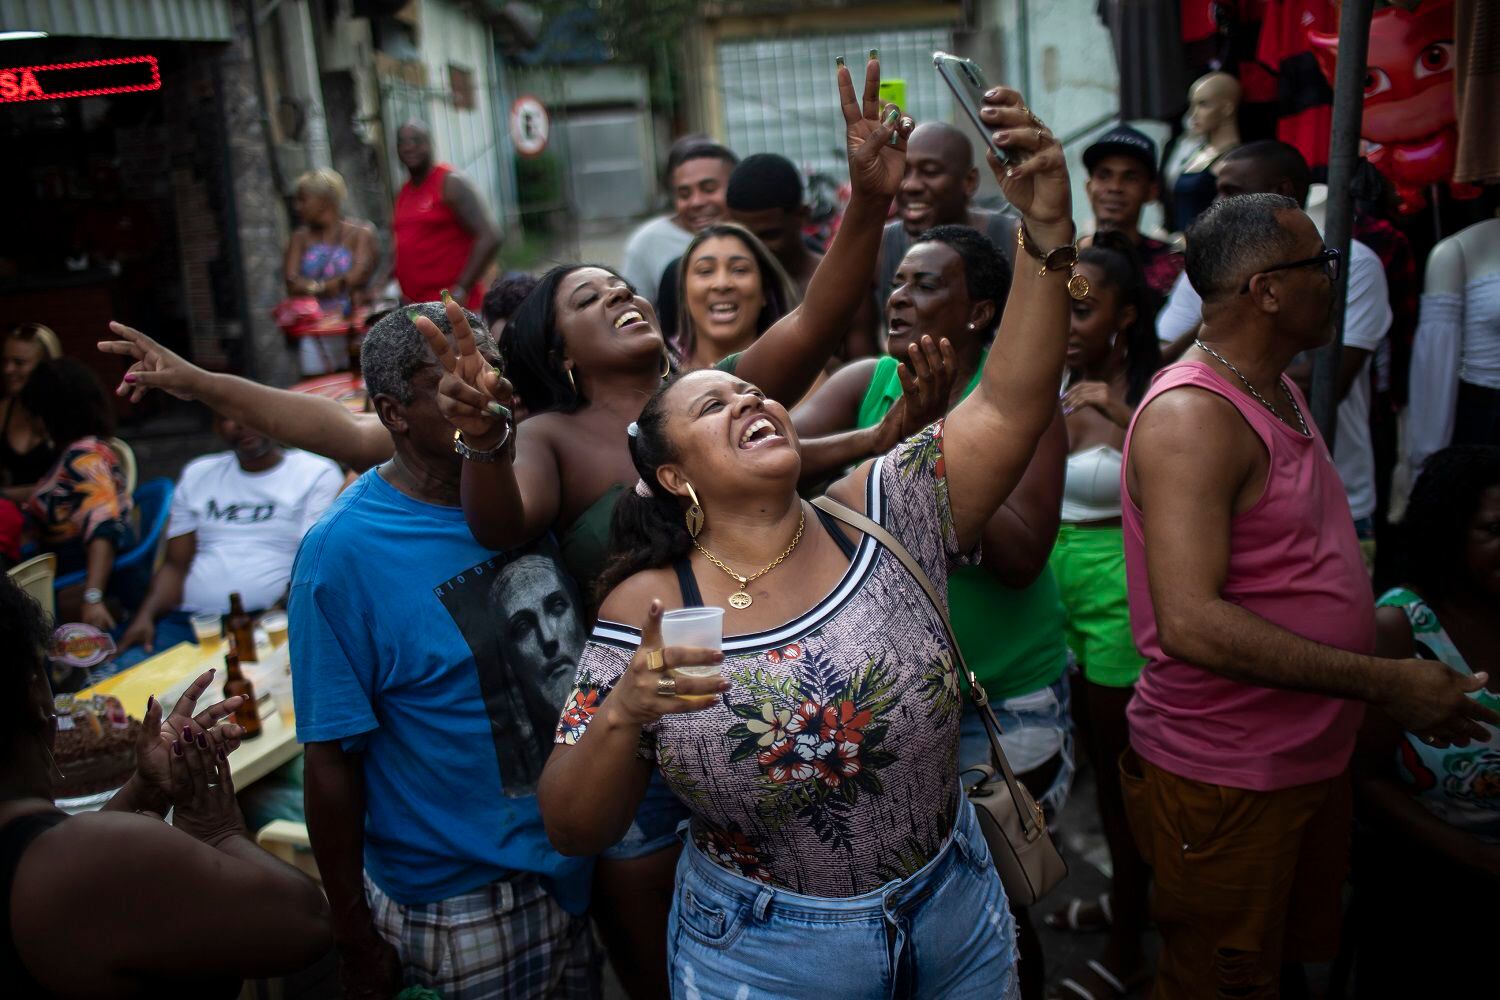 Michele Pereira se toma una selfie con su familia mientras celebran el cumpleaños de un pariente en un evento de samba en Vila Vintem, Rio de Janeiro, Brasil, el sábado 23 de mayo de 2021. La nueva versión de Anitta del clásico de la bossa nova "La chica de Ipanema" ofrece una actualización de las mujeres de Río respecto a la original de los años 60. (AP Foto/Bruna Prado)